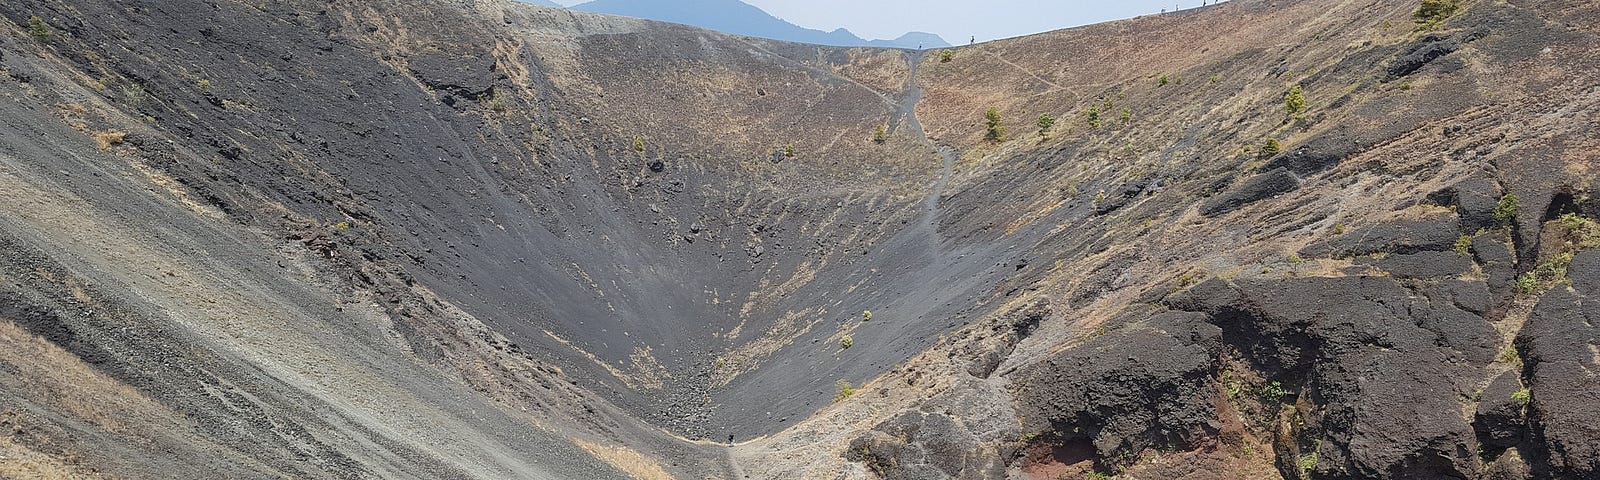 Crater of Paricutin Volcano in Mexico.